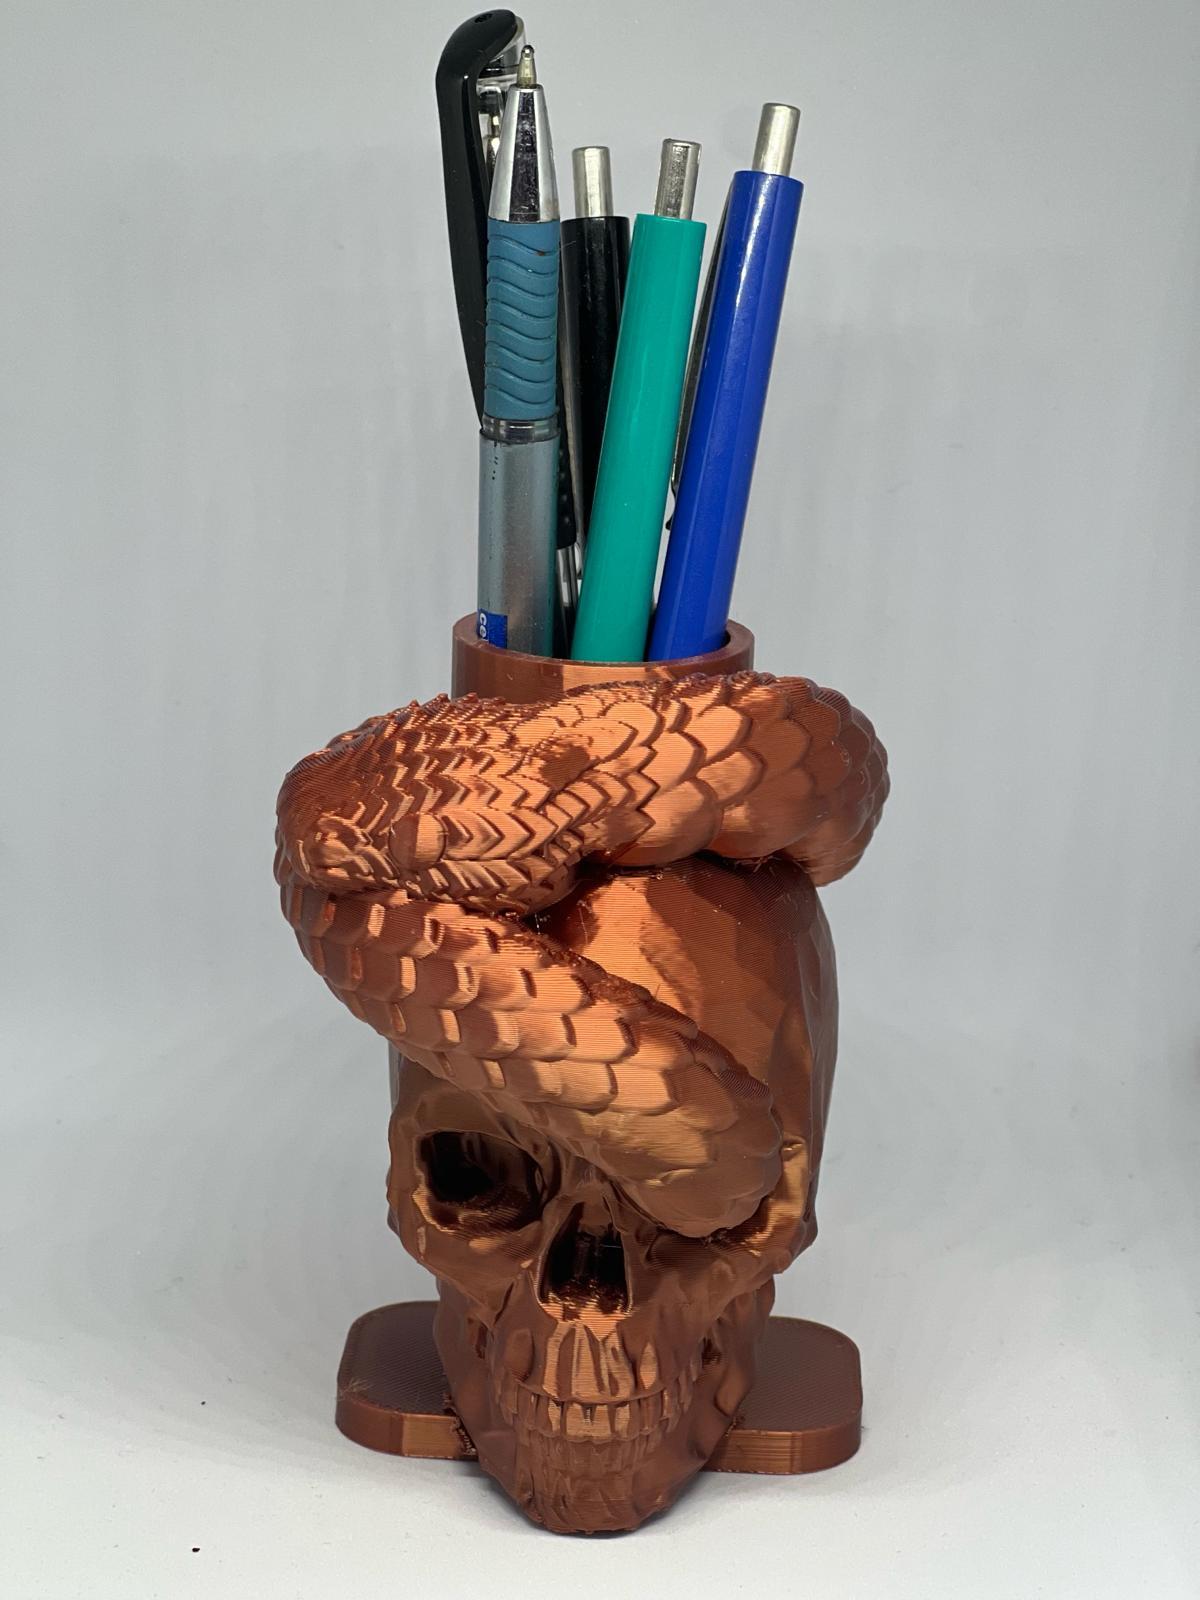 Skull and snakes design toothbrush,, pencil holder 3d model